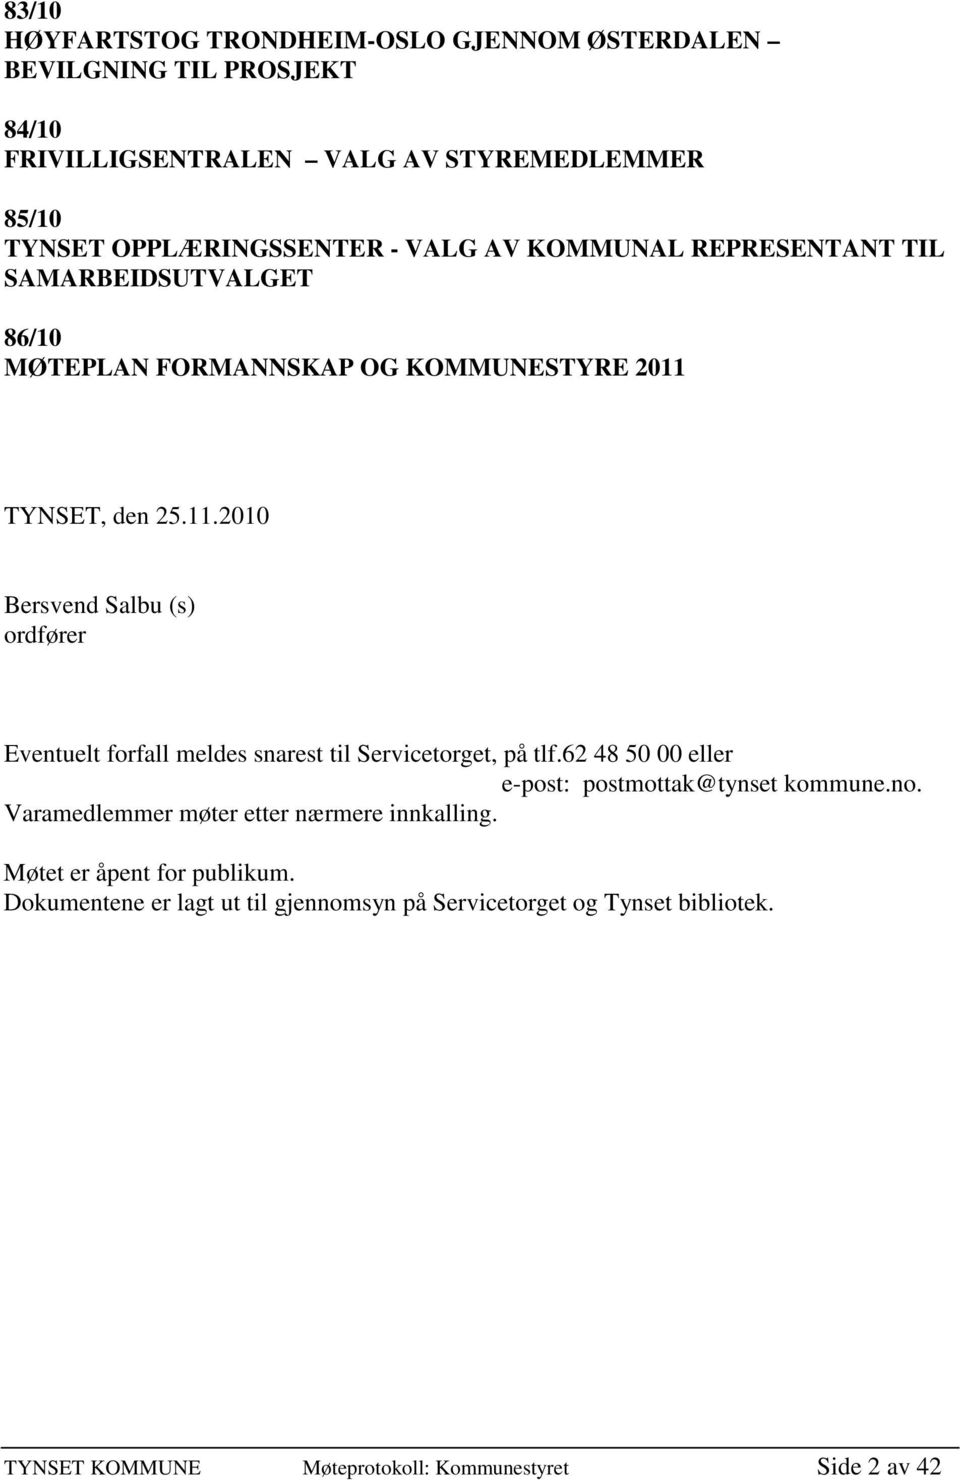 TYNSET, den 25.11.2010 Bersvend Salbu (s) ordfører Eventuelt forfall meldes snarest til Servicetorget, på tlf.